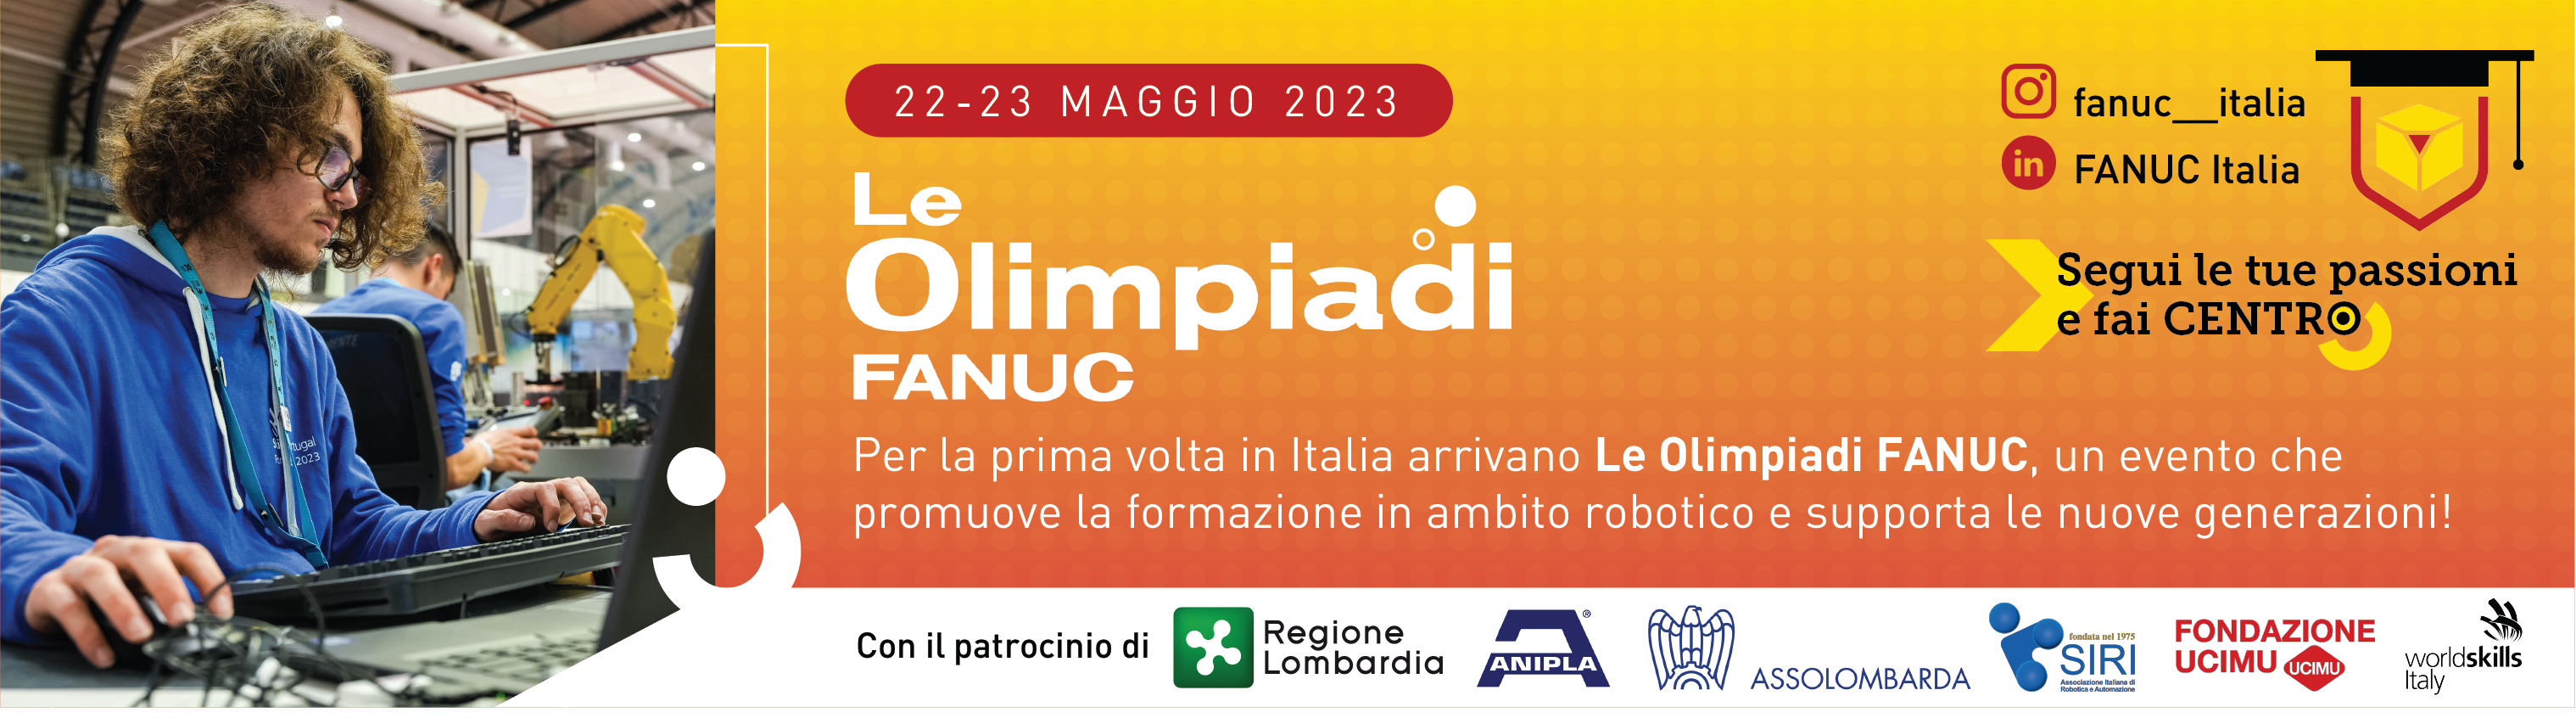 Concorso di robotica industriale Olimpiadi FANUC Italia – 22 e 23 maggio 2023